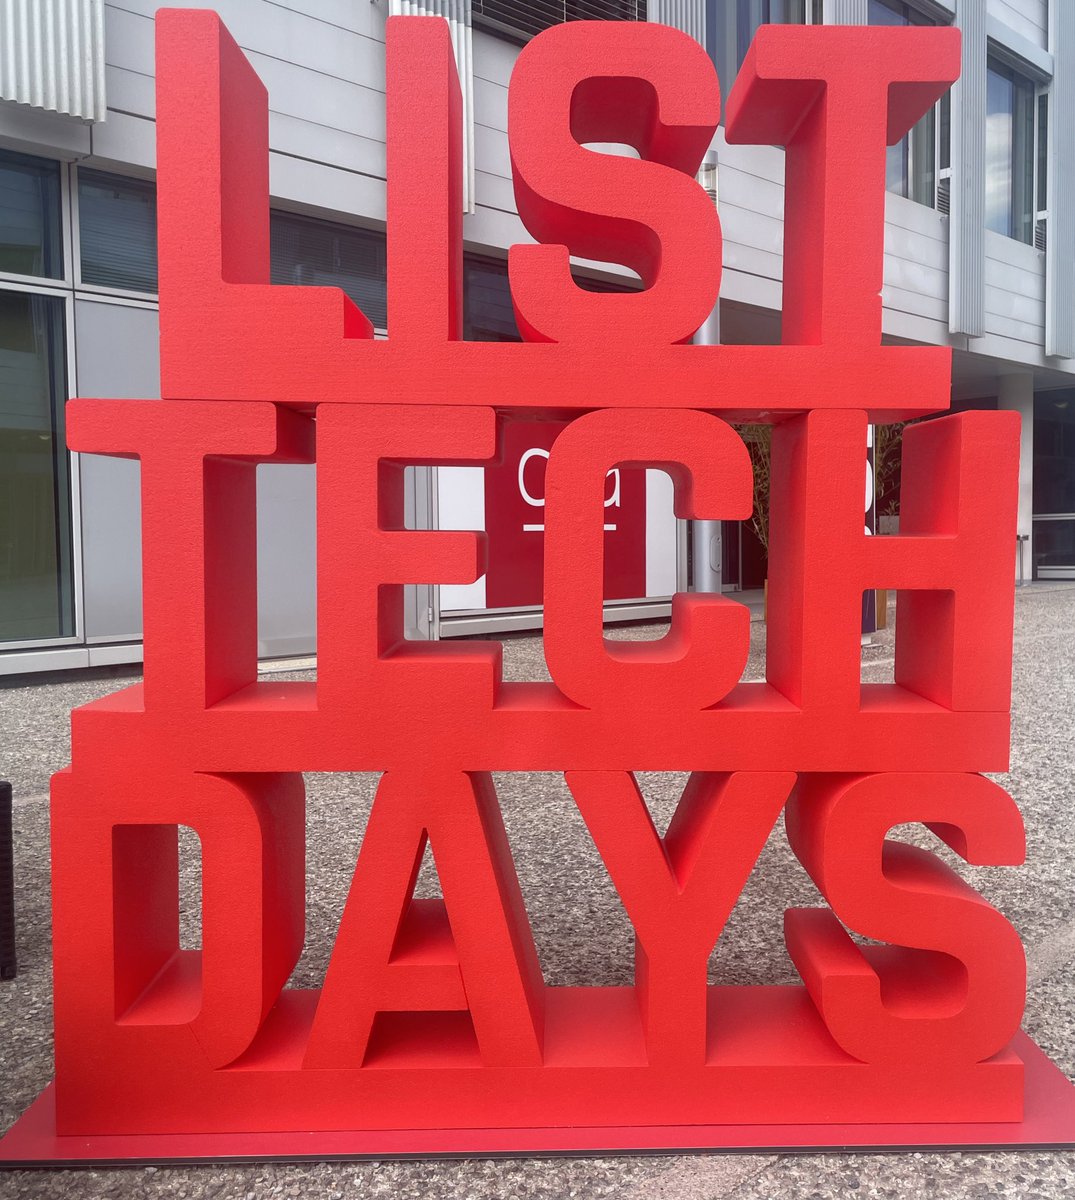 #ListTechDays c'est fini ! 💪
Une journée pleine d'idées & d'#innovations pour bâtir notre #industrie de demain !
Merci aux intervenants & à nos partenaires pour leur engagement sans faille. 
#France2030 @Safran @Siemens @DGAC @Iledefrance @Carnot @CEA_Officiel
#Tech #Industrie50